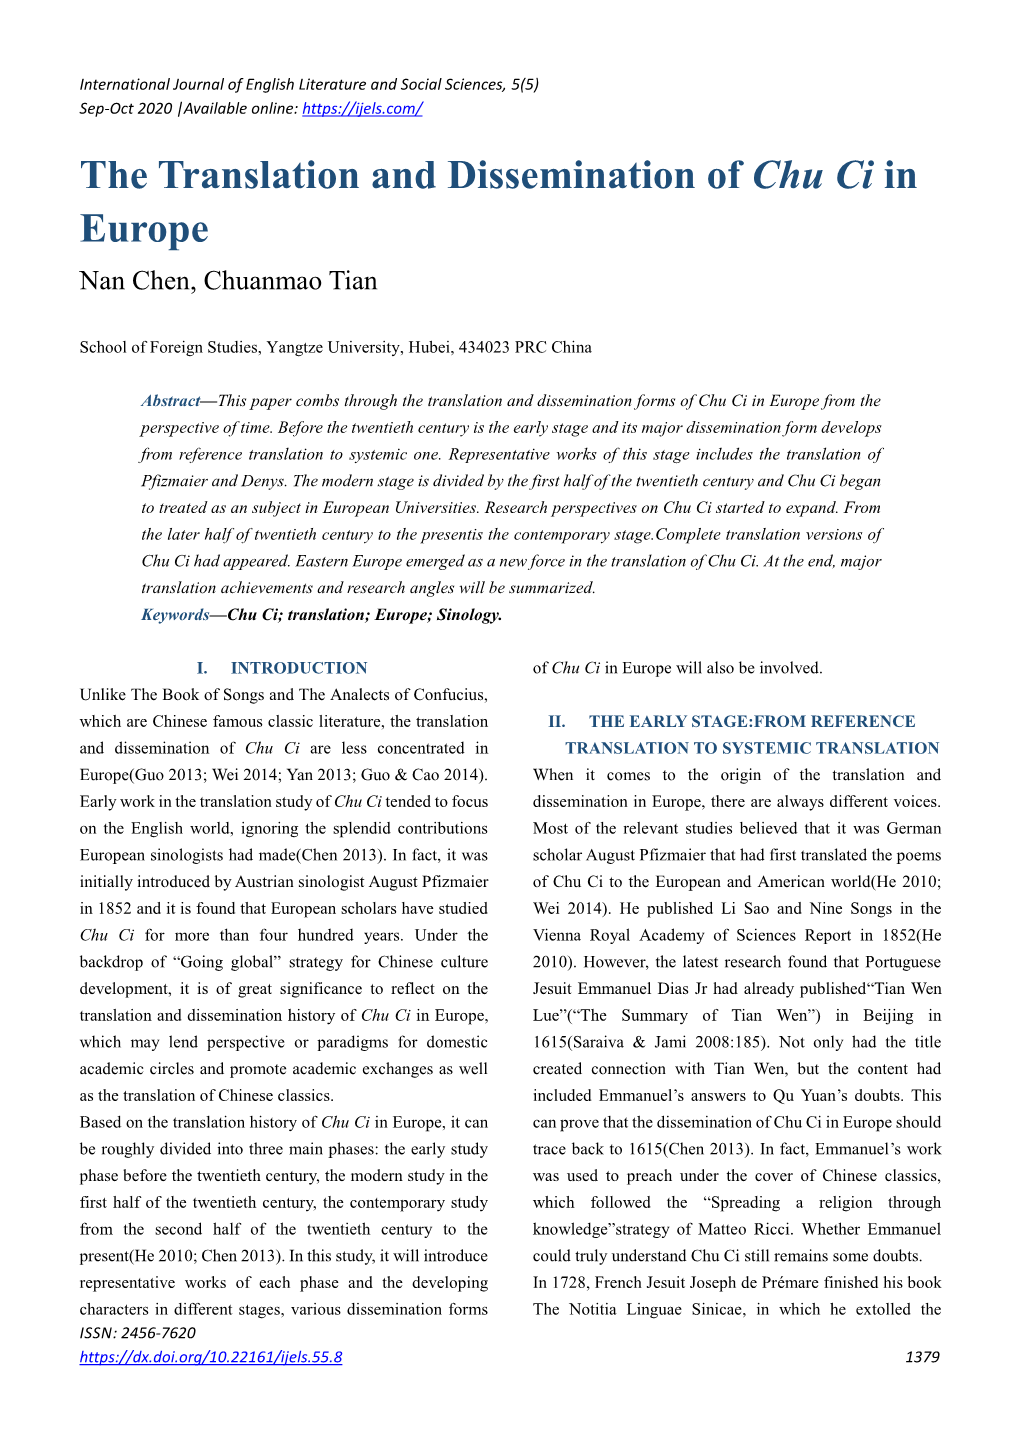 The Translation and Dissemination of Chu Ci in Europe Nan Chen, Chuanmao Tian